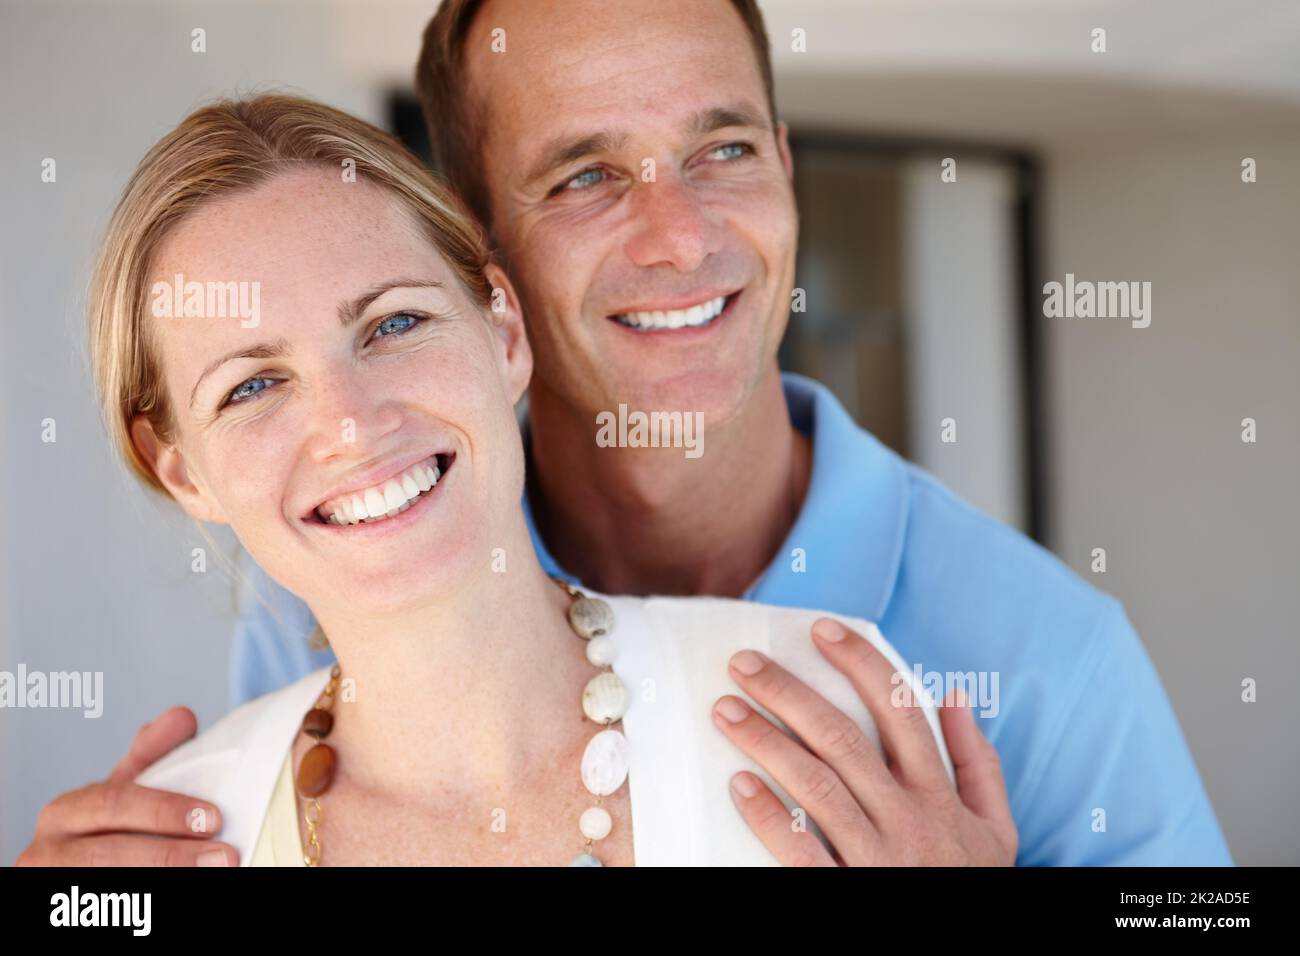 Es gibt kein Leben ohne Liebe. Intime Aufnahme eines attraktiven Paares, das sich zu Hause anfreundet. Stockfoto